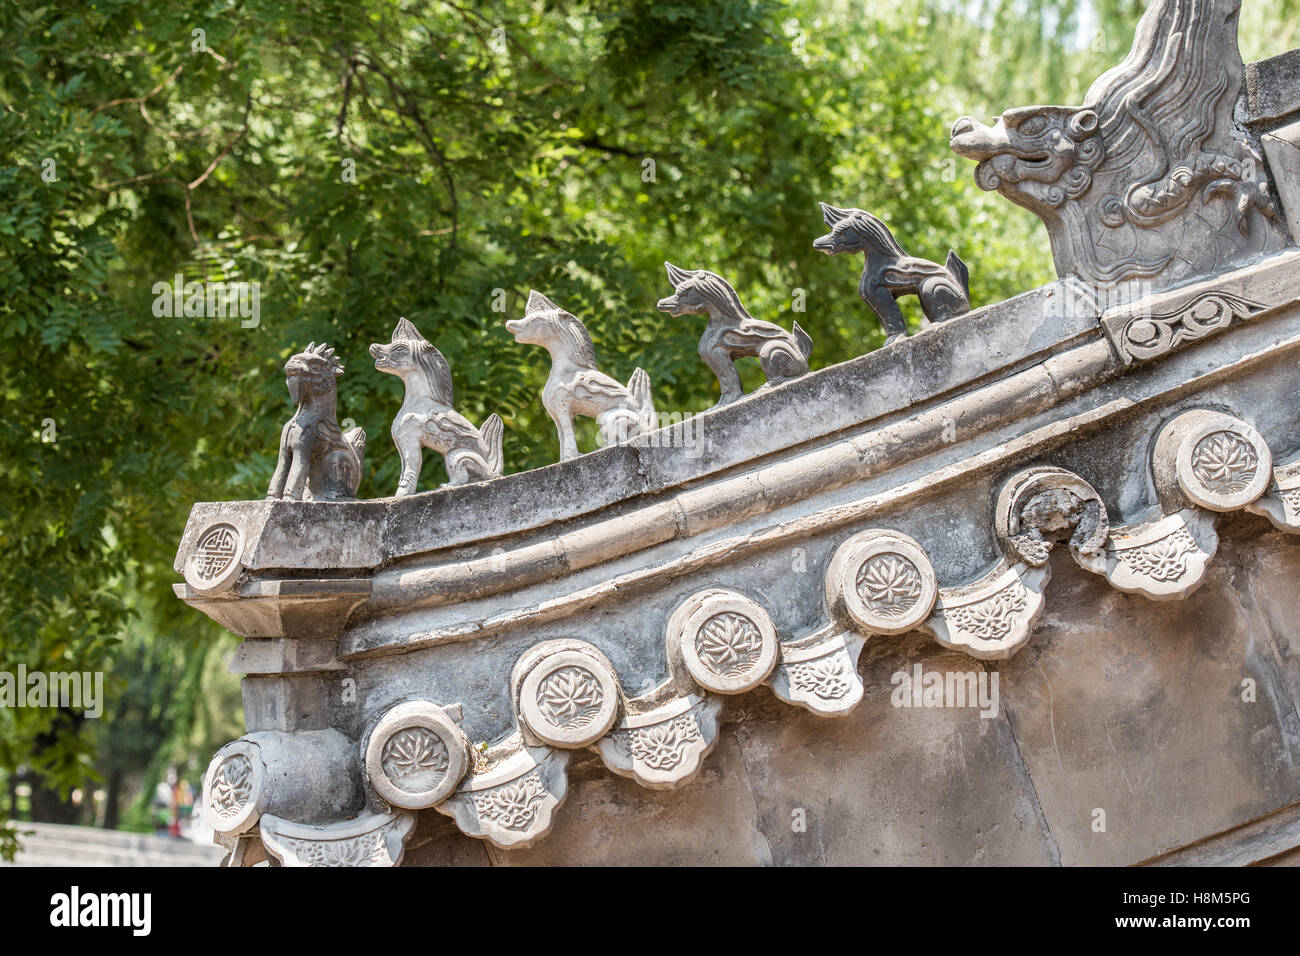 Pechino Cina - Dettaglio delle decorazioni scolpite foo cani nell'architettura del Palazzo Museo situato nella Città Proibita. Foto Stock